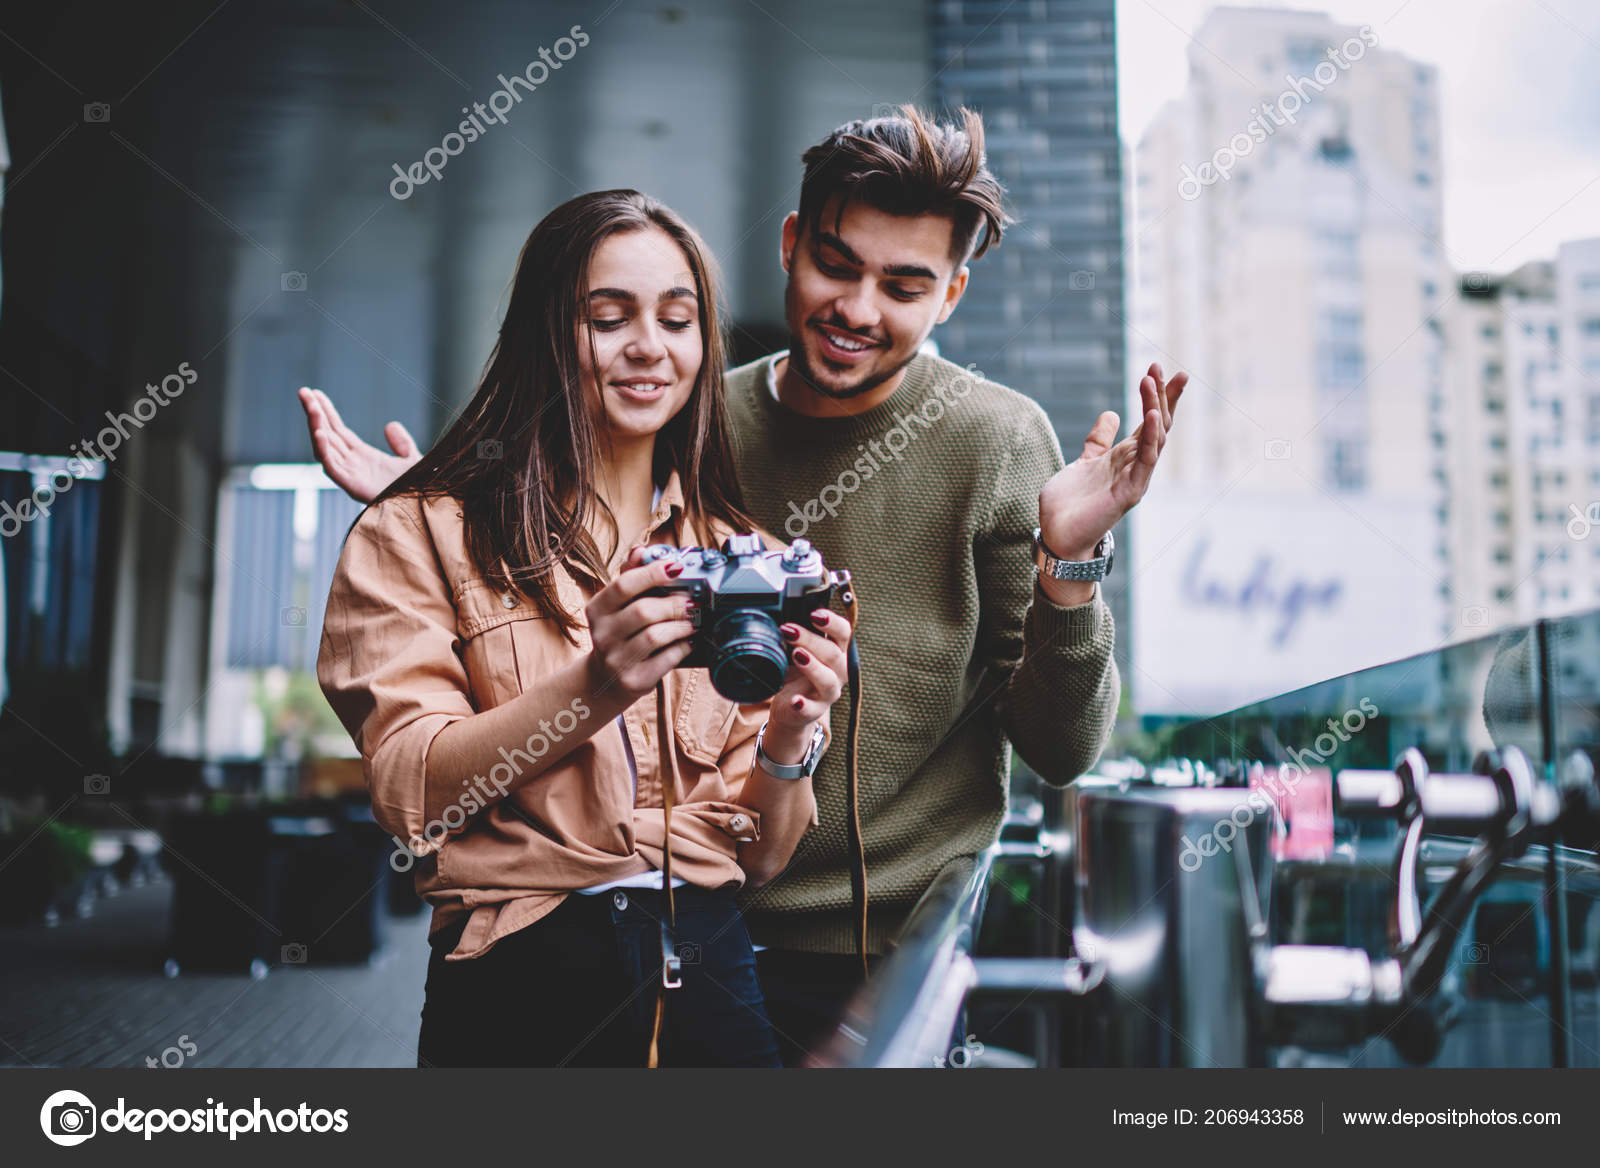 Sexy Selfie Poses That Look on Fleek on Camera – MyPostcard